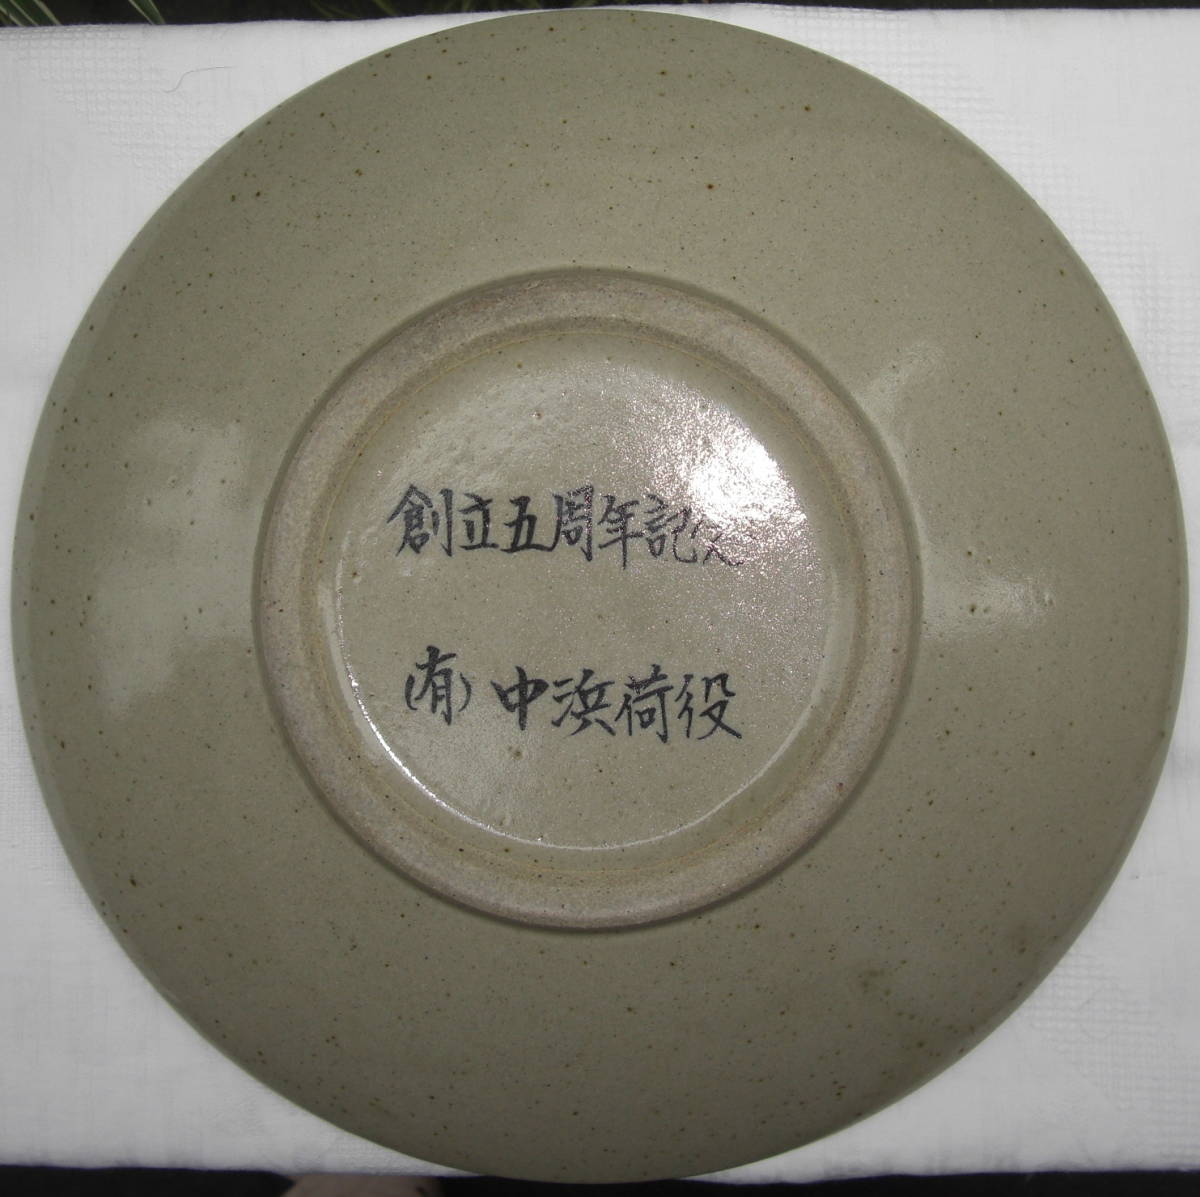 ** керамика коллекция / Shigaraki . сосна рисунок, большая тарелка 31cm б/у товар!!1010**